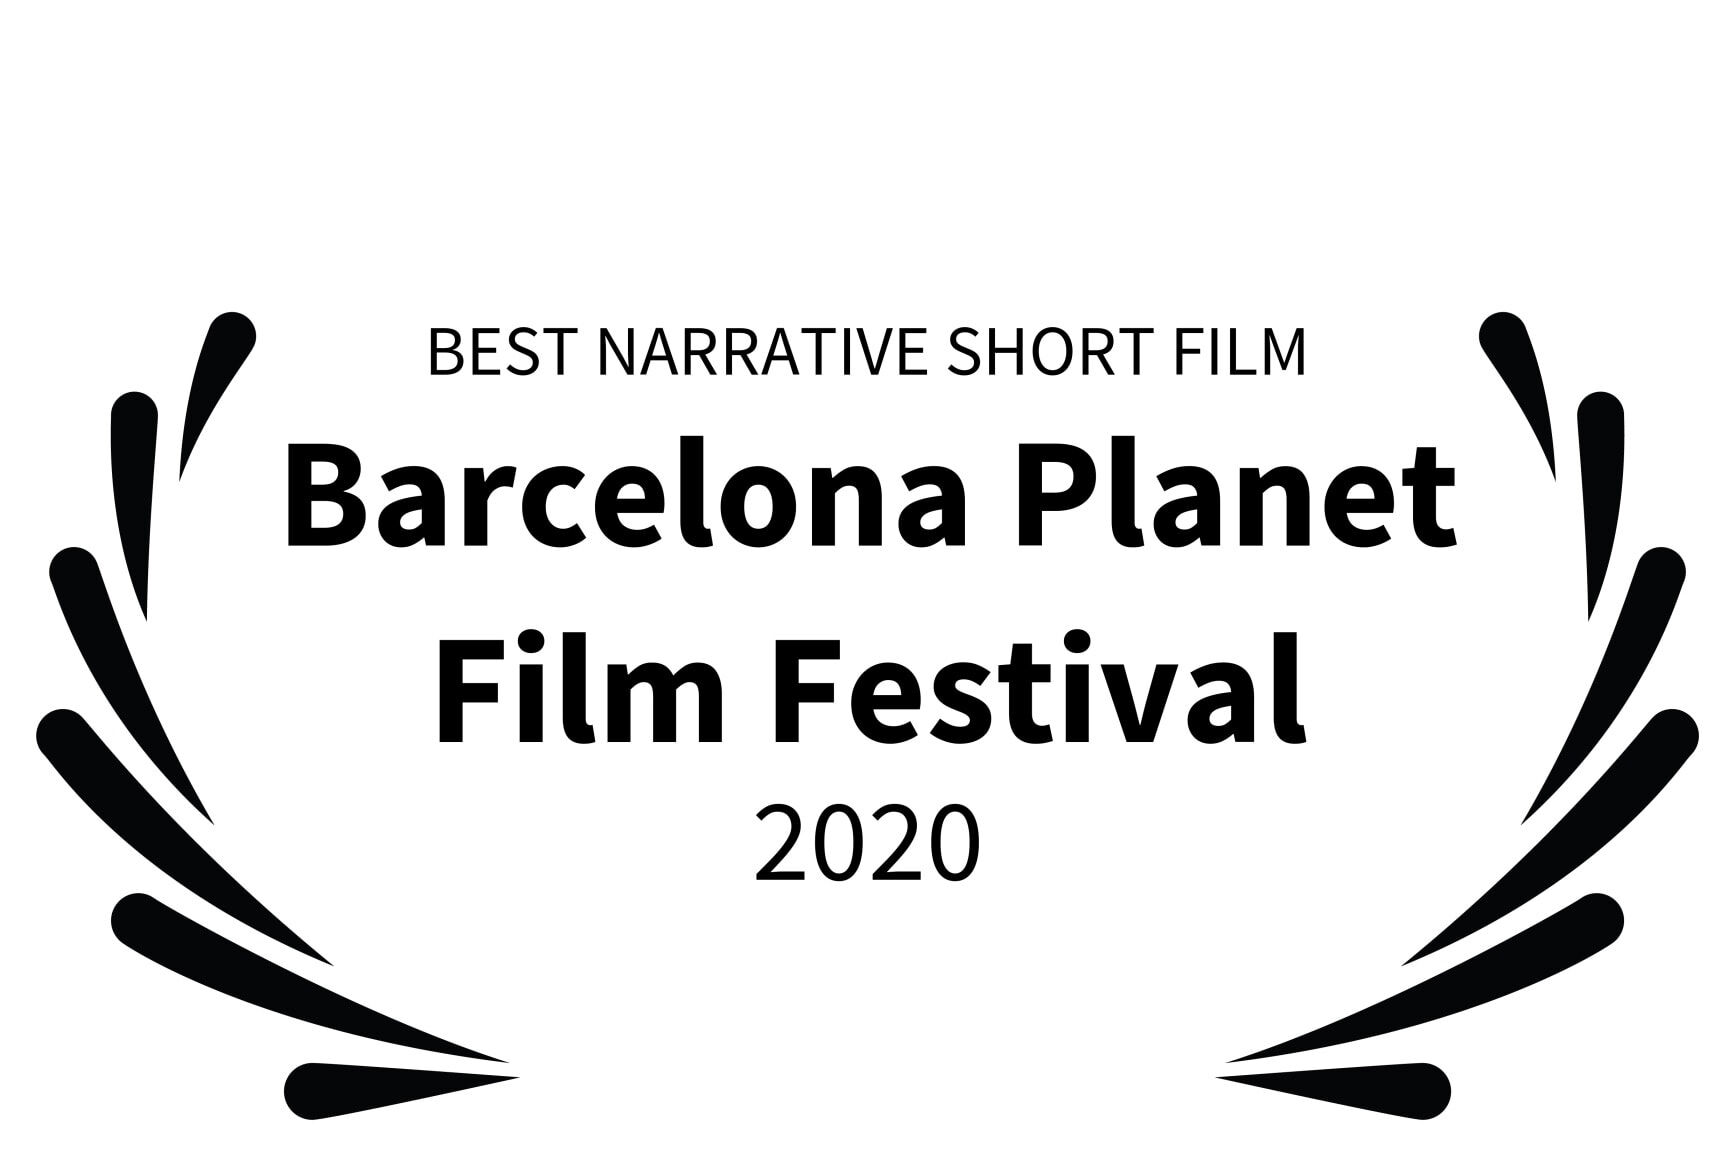 BEST NARRATIVE SHORT FILM - Barcelona Planet Film Festival - 2020